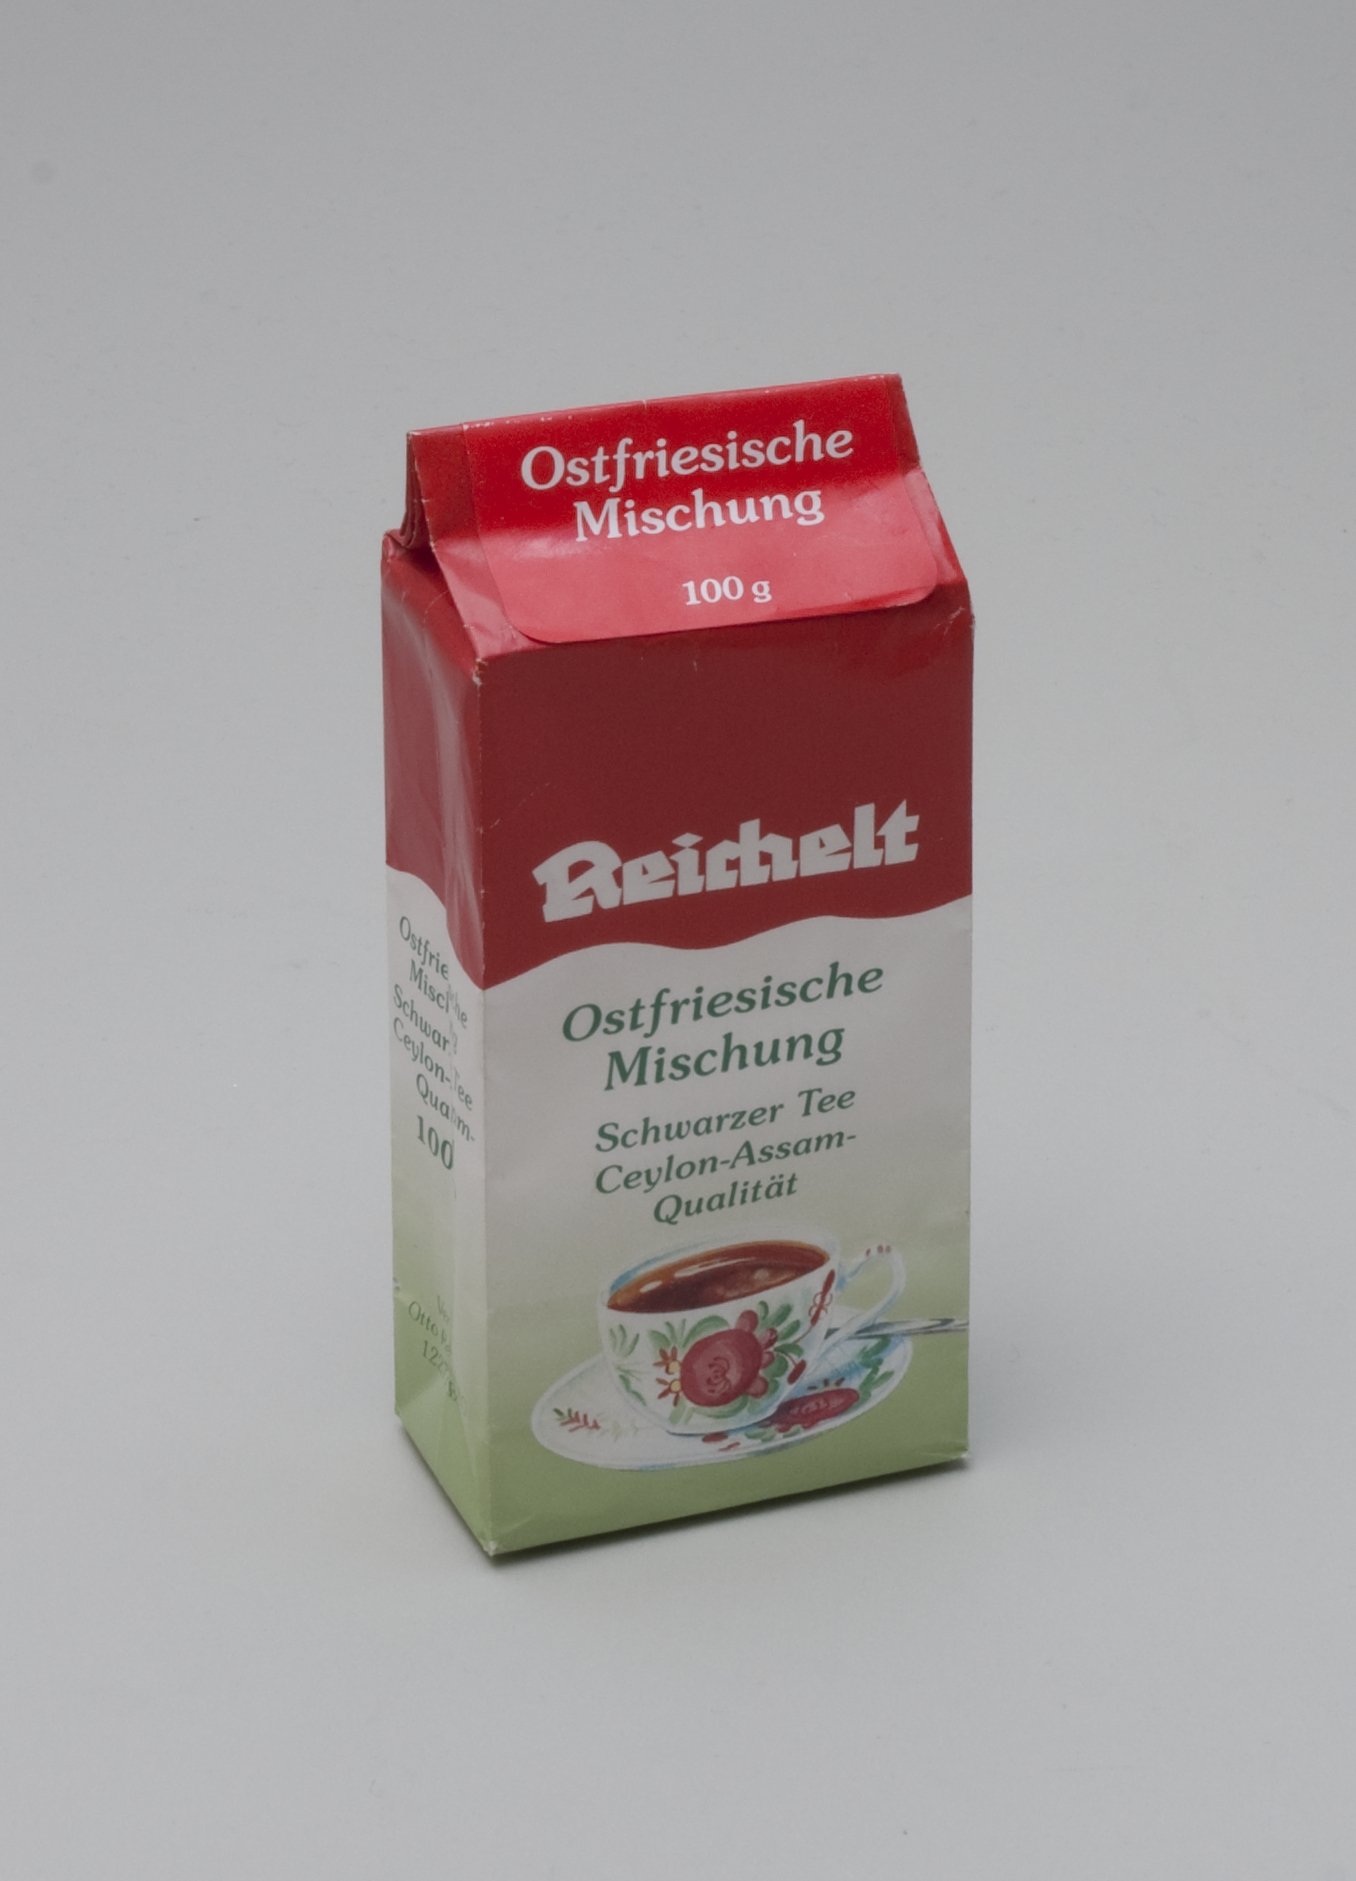 Tee-Verpackung "Ostfriesische Mischung" der "Reichelt" Eigenmarke (Stiftung Domäne Dahlem - Landgut und Museum, Weiternutzung nur mit Genehmigung des Museums CC BY-NC-SA)